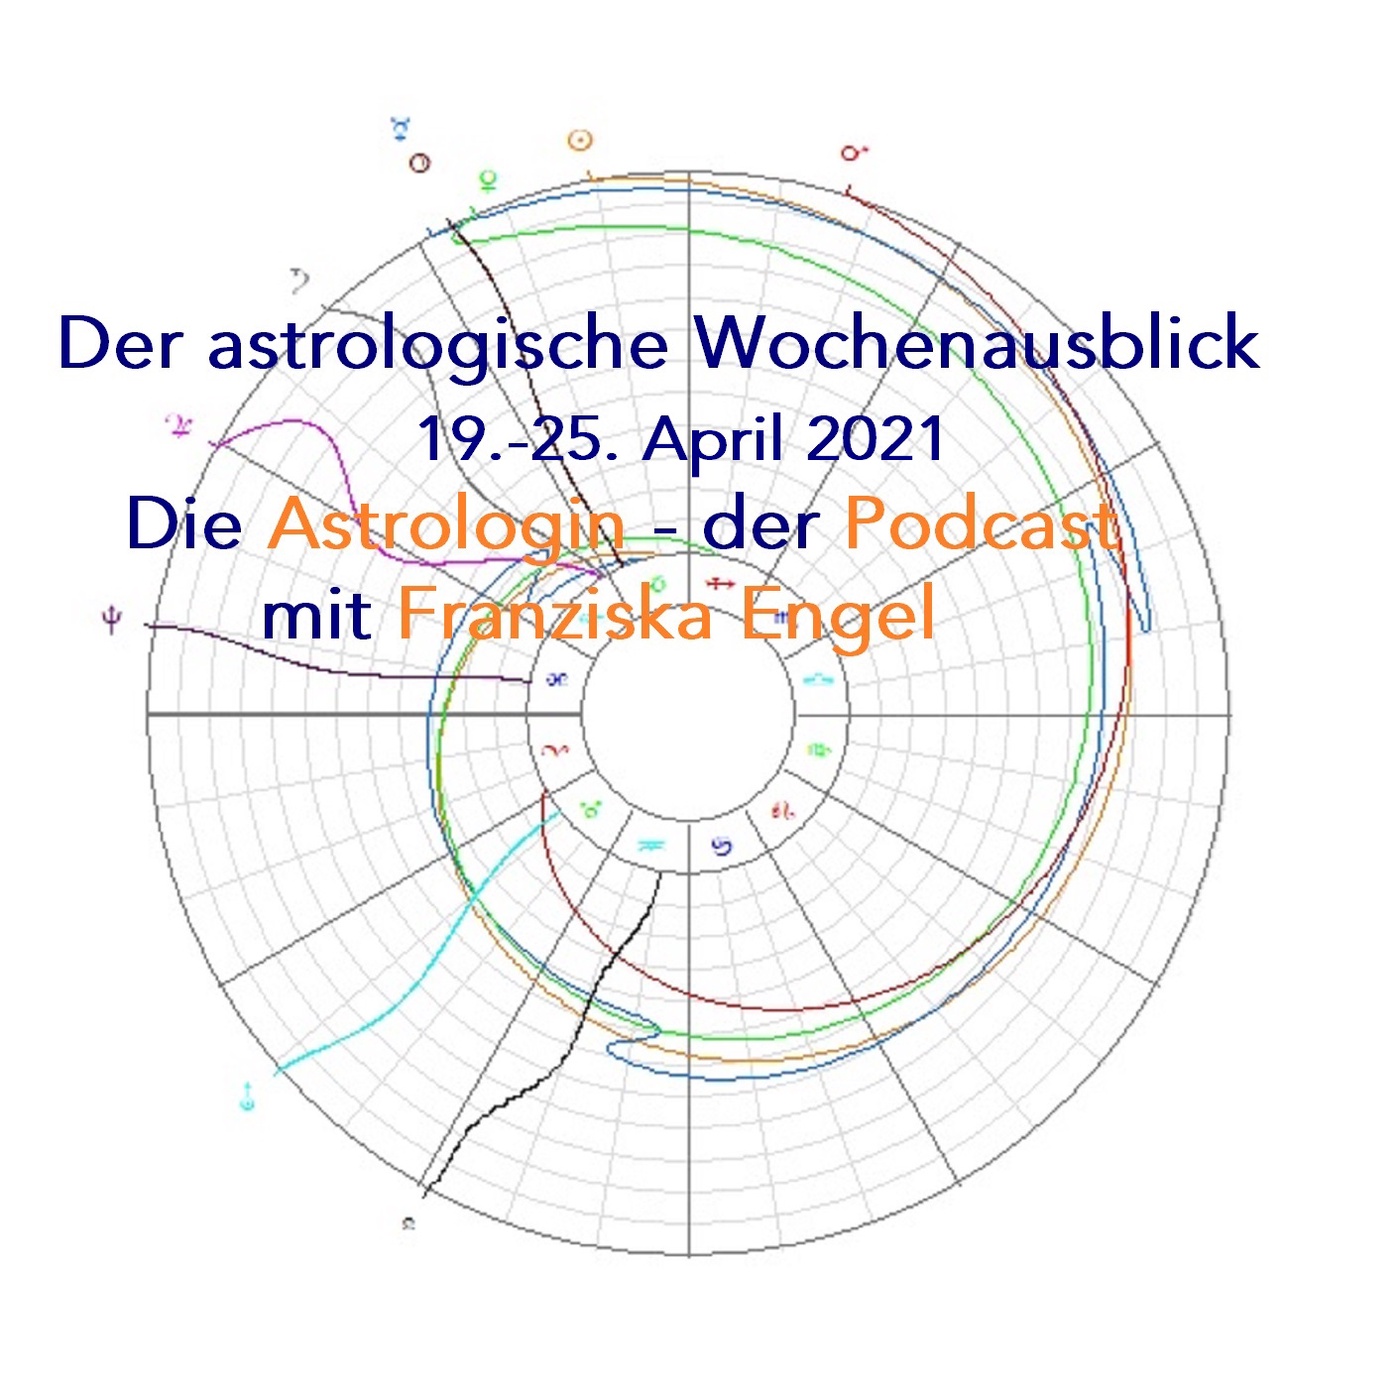 Astrologischer Wochenausblick 19. - 25. April 2021